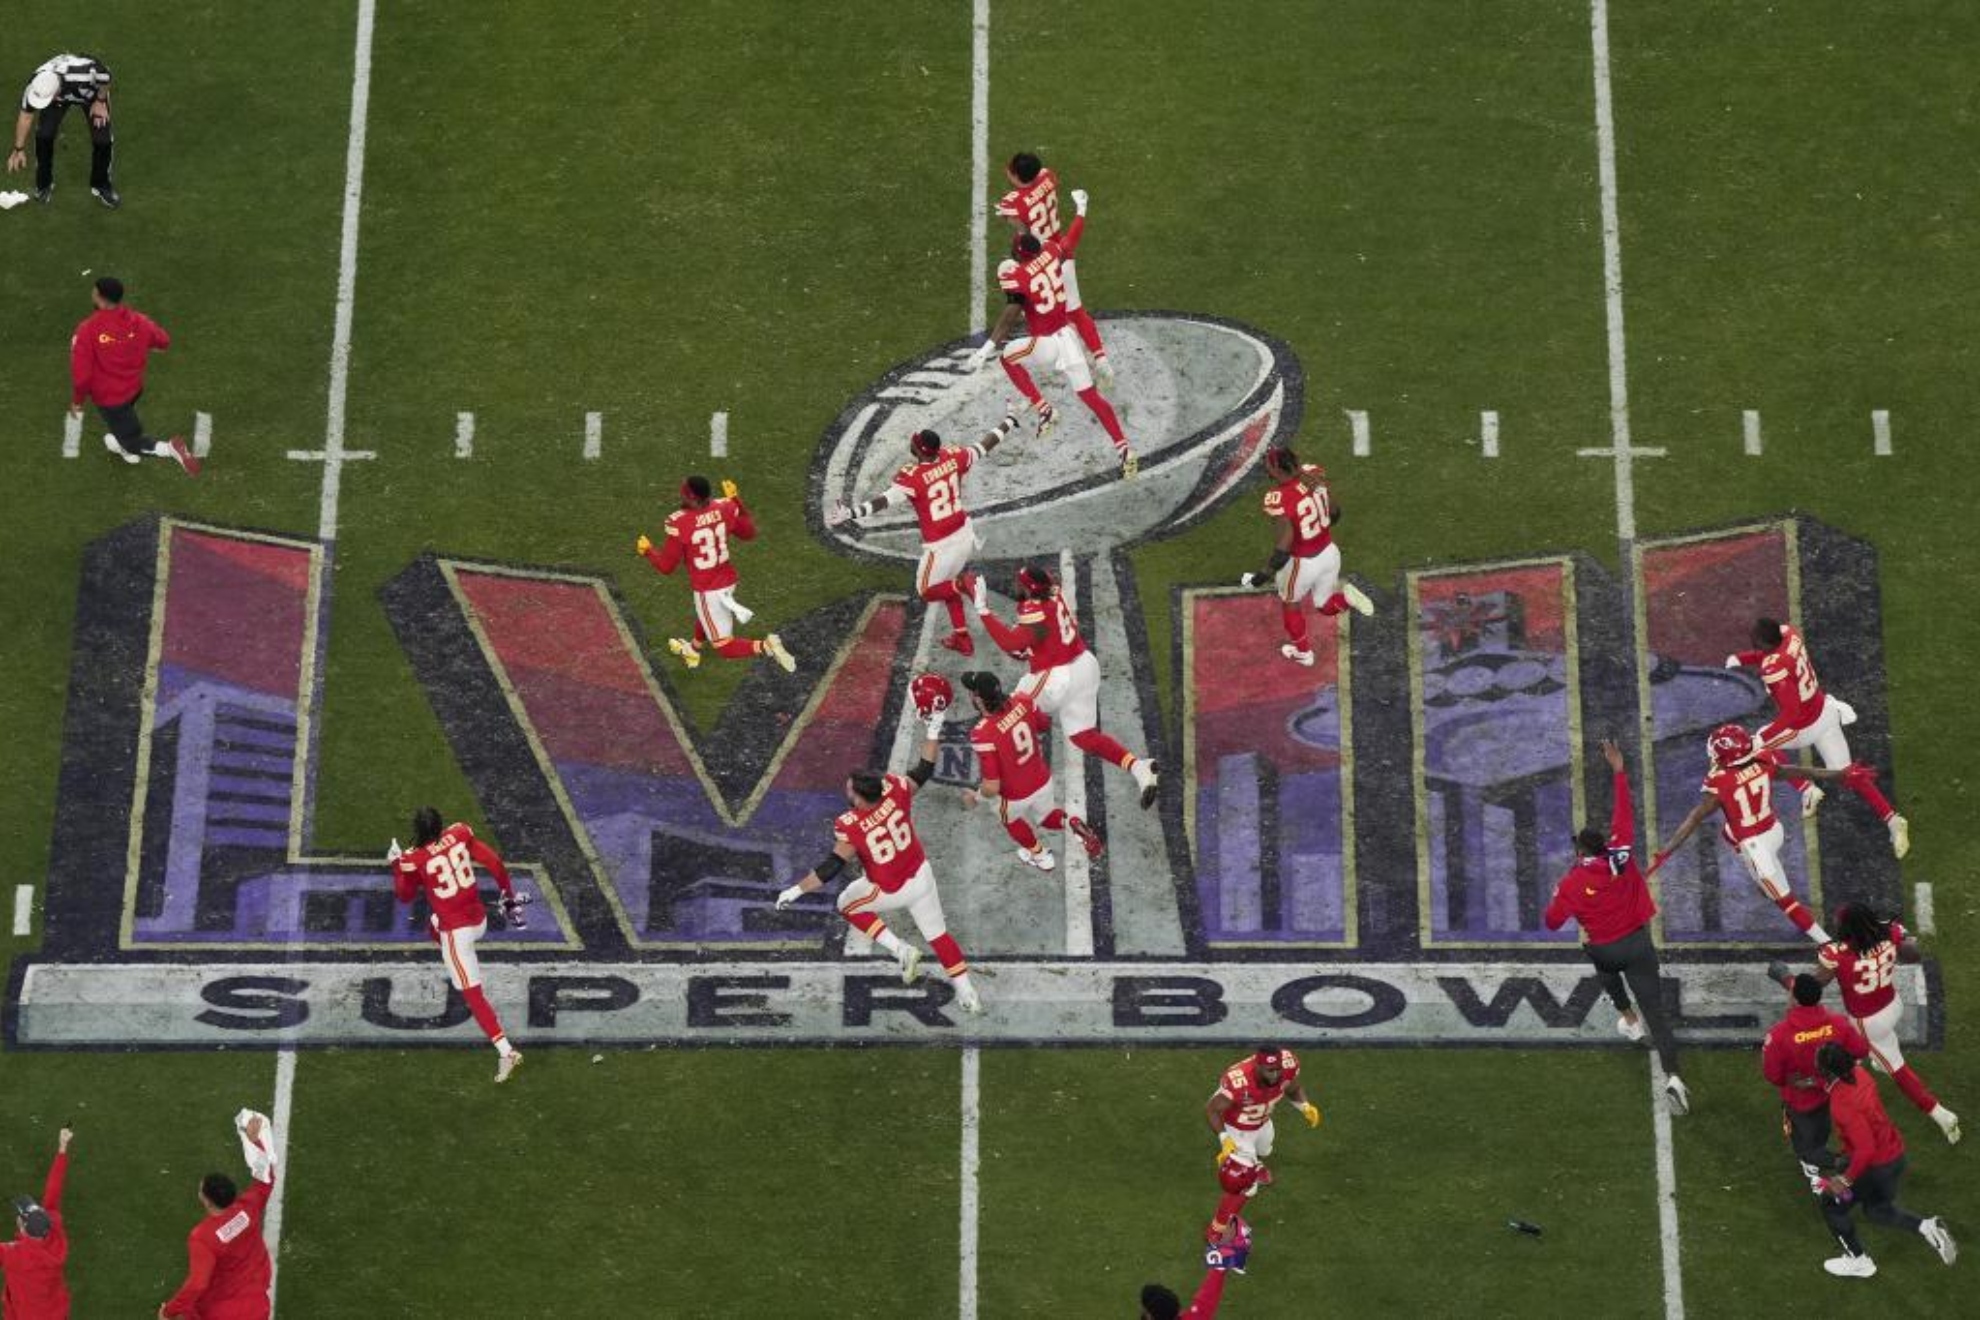 La Super Bowl de Chiefs y Taylor Swift bate el rcord de espectadores en Estados Unidos